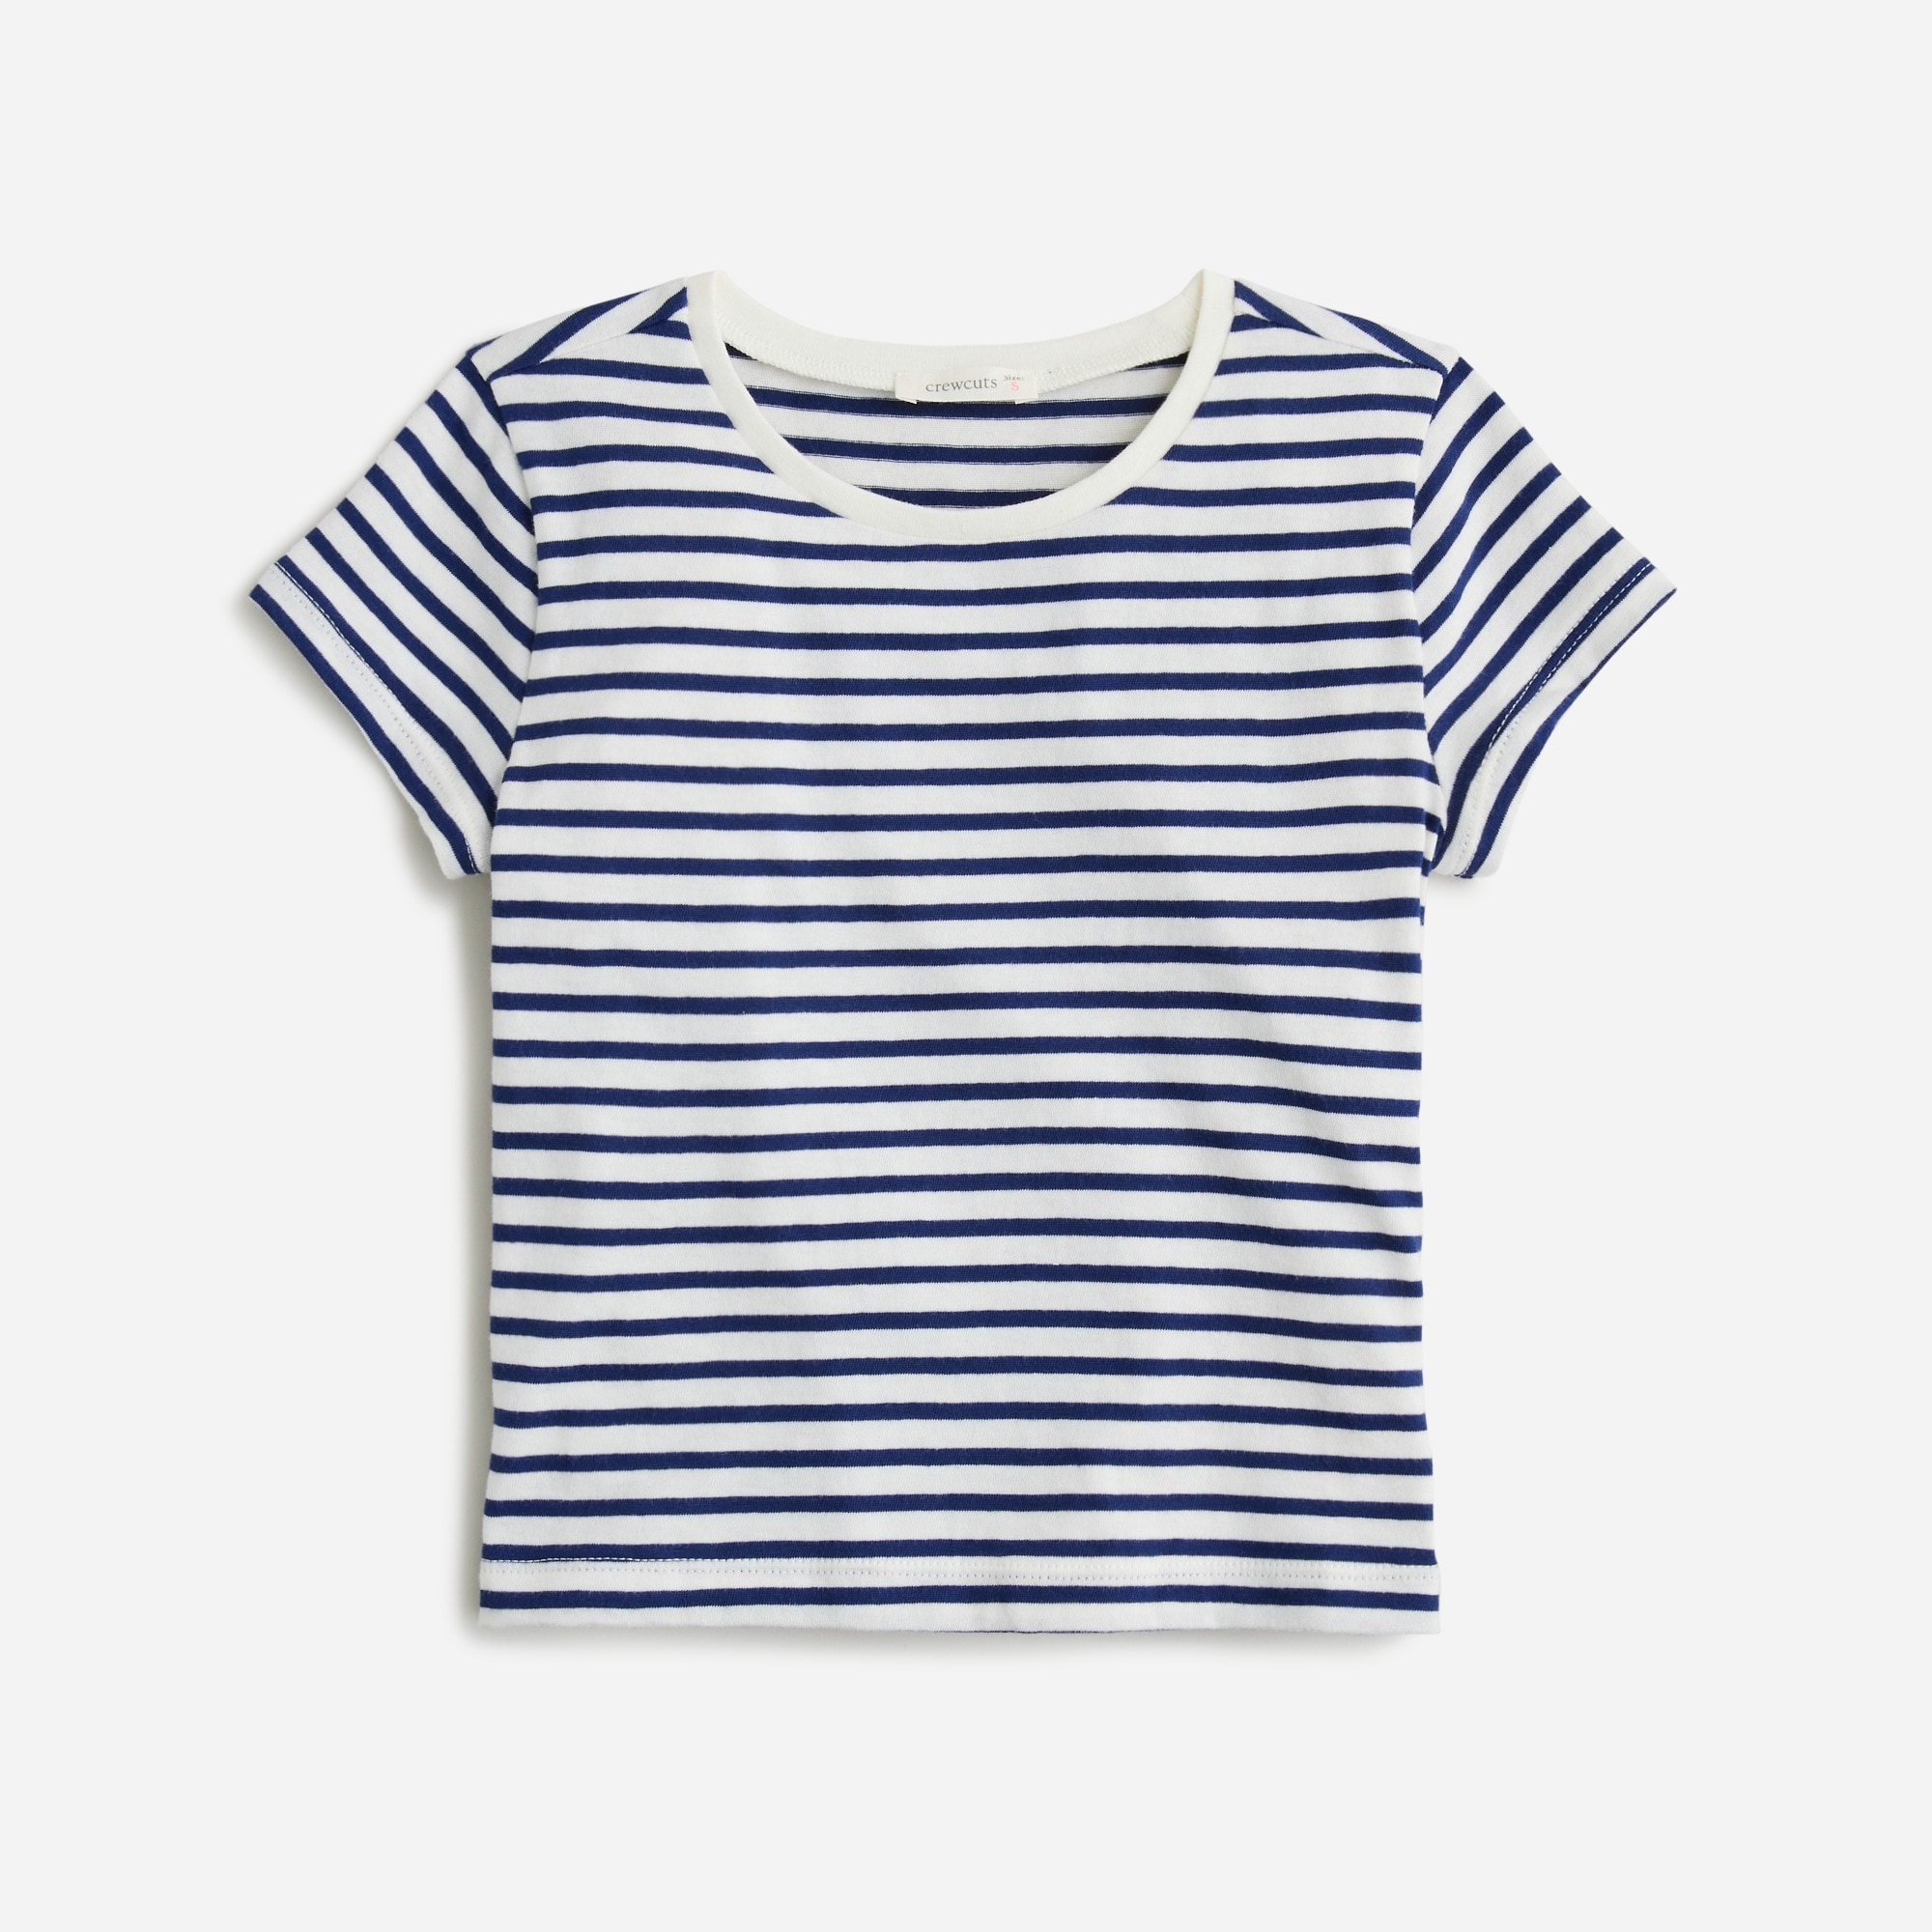 Jcrew Girls shrunken T-shirt in striped vintage jersey